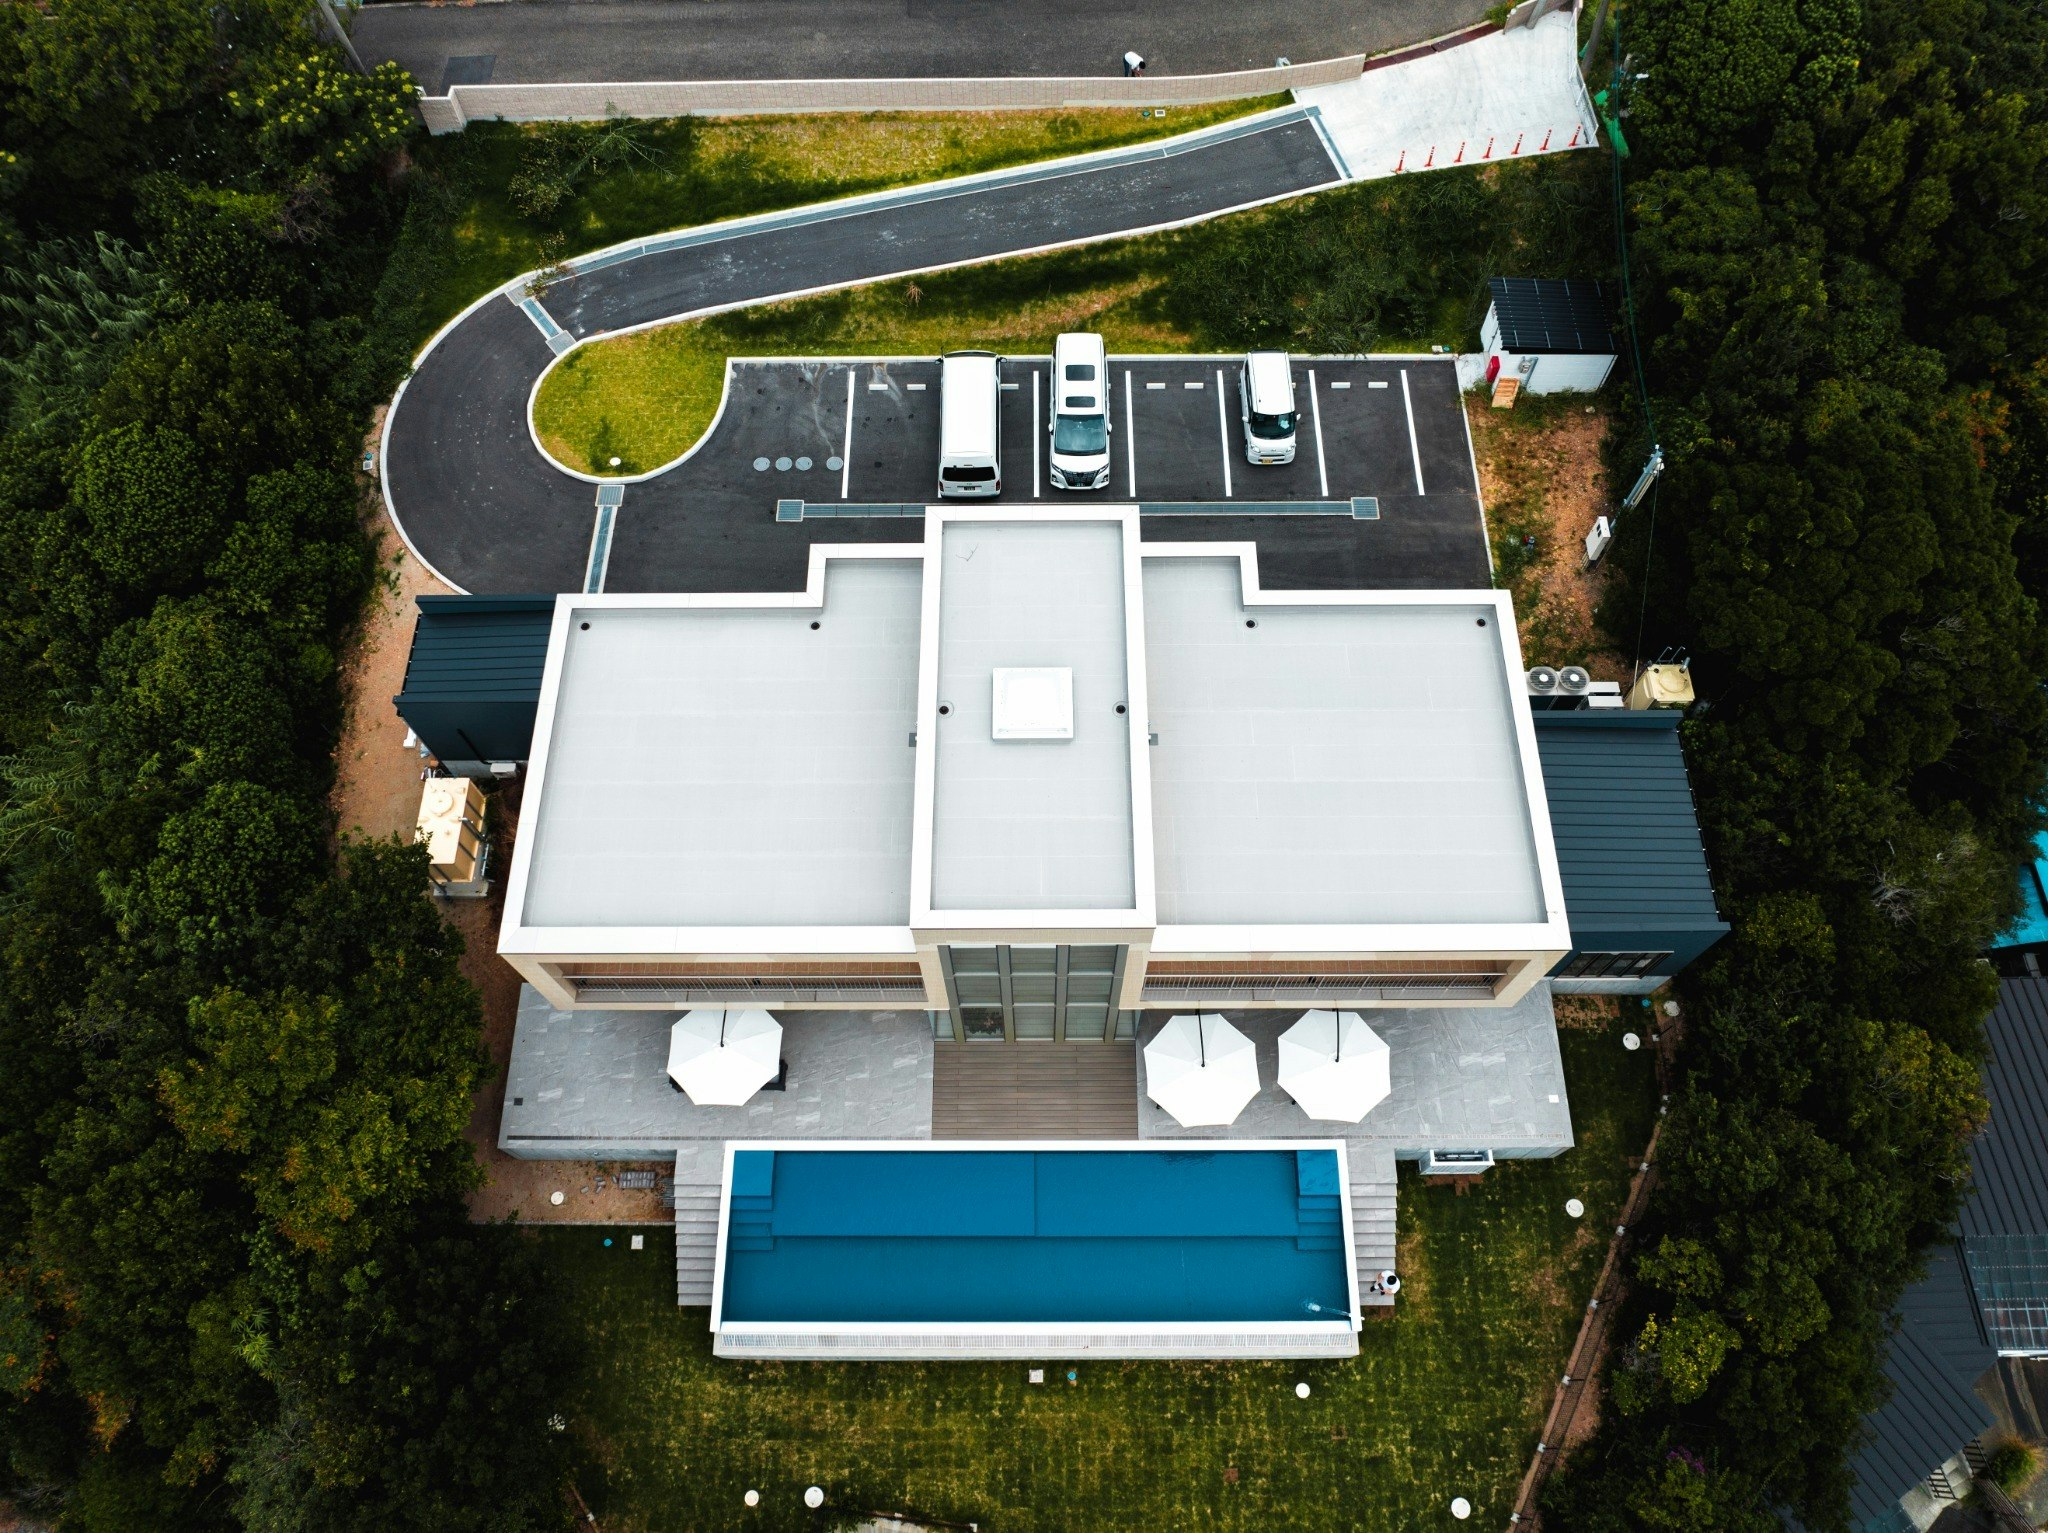 最高級 建築家高松伸設計 海ビュー&プール&白浜温泉付き超豪華ヴィラまるまる貸切